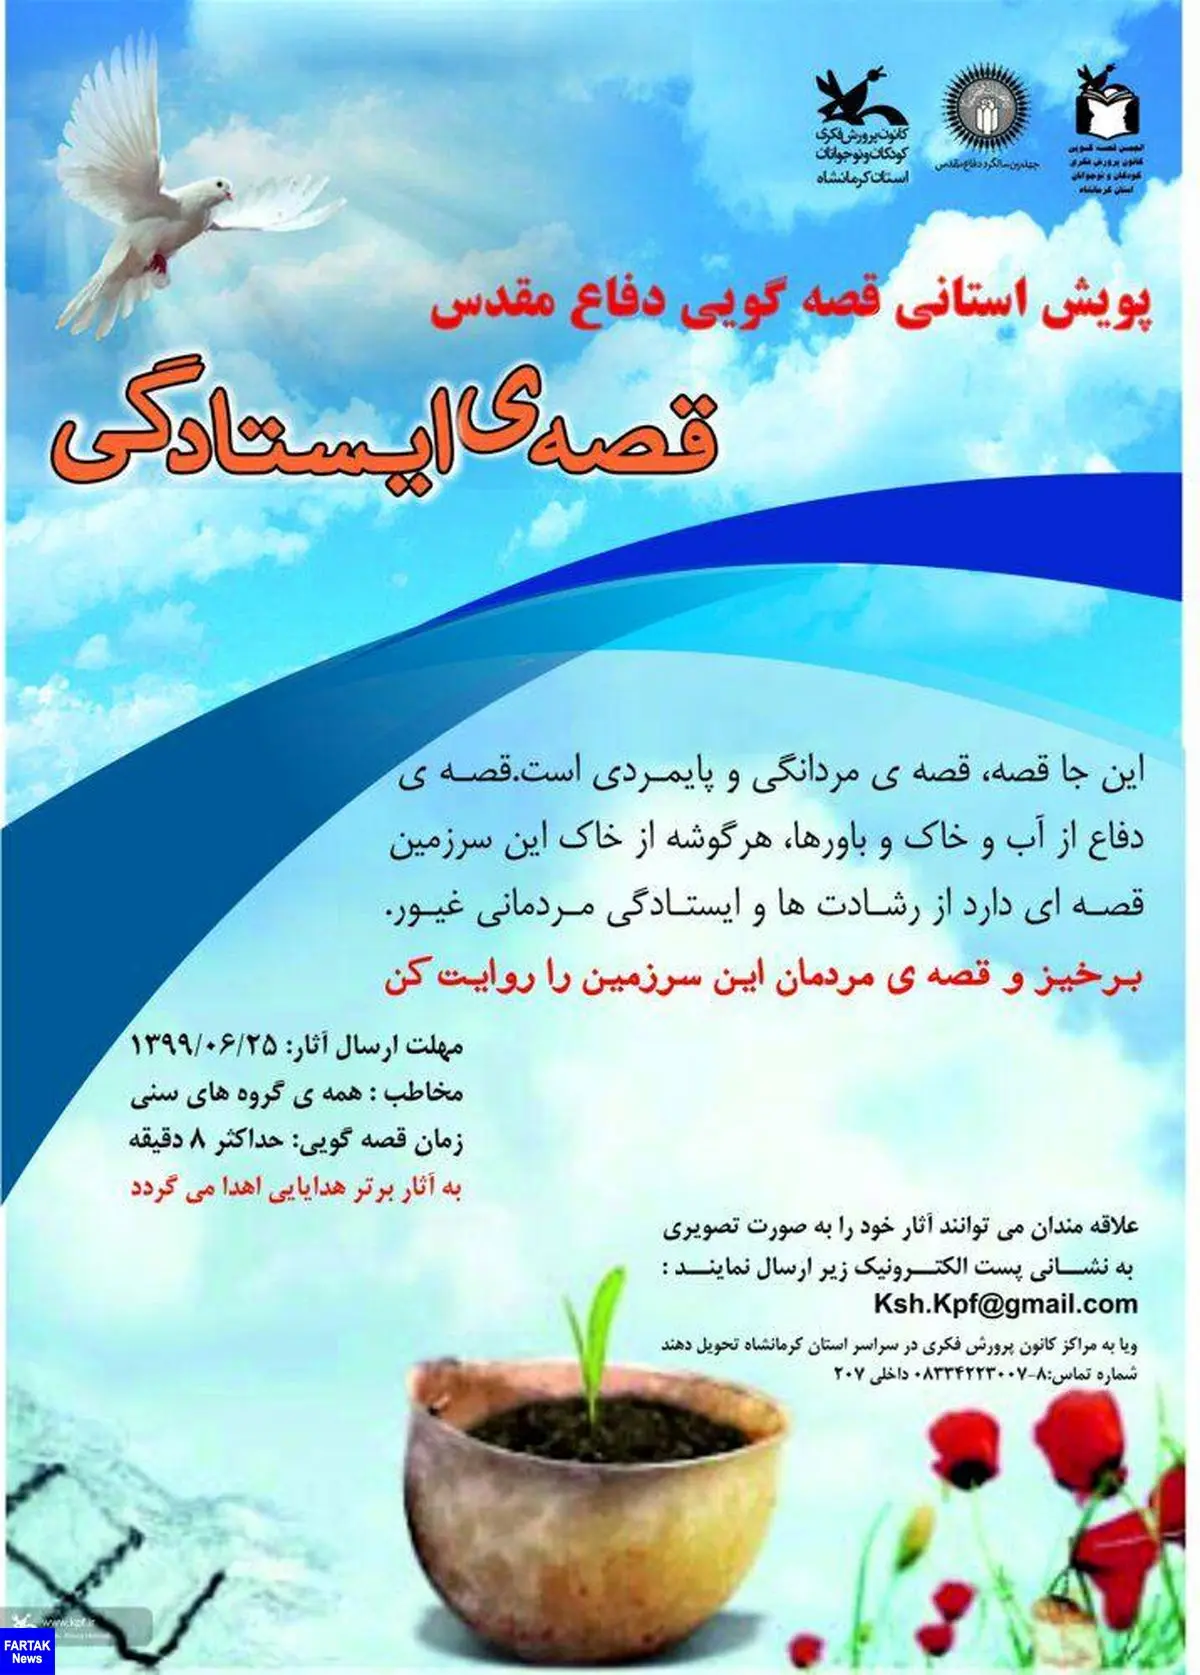 " قصه ایستادگی" در کرمانشاه روایت می شود